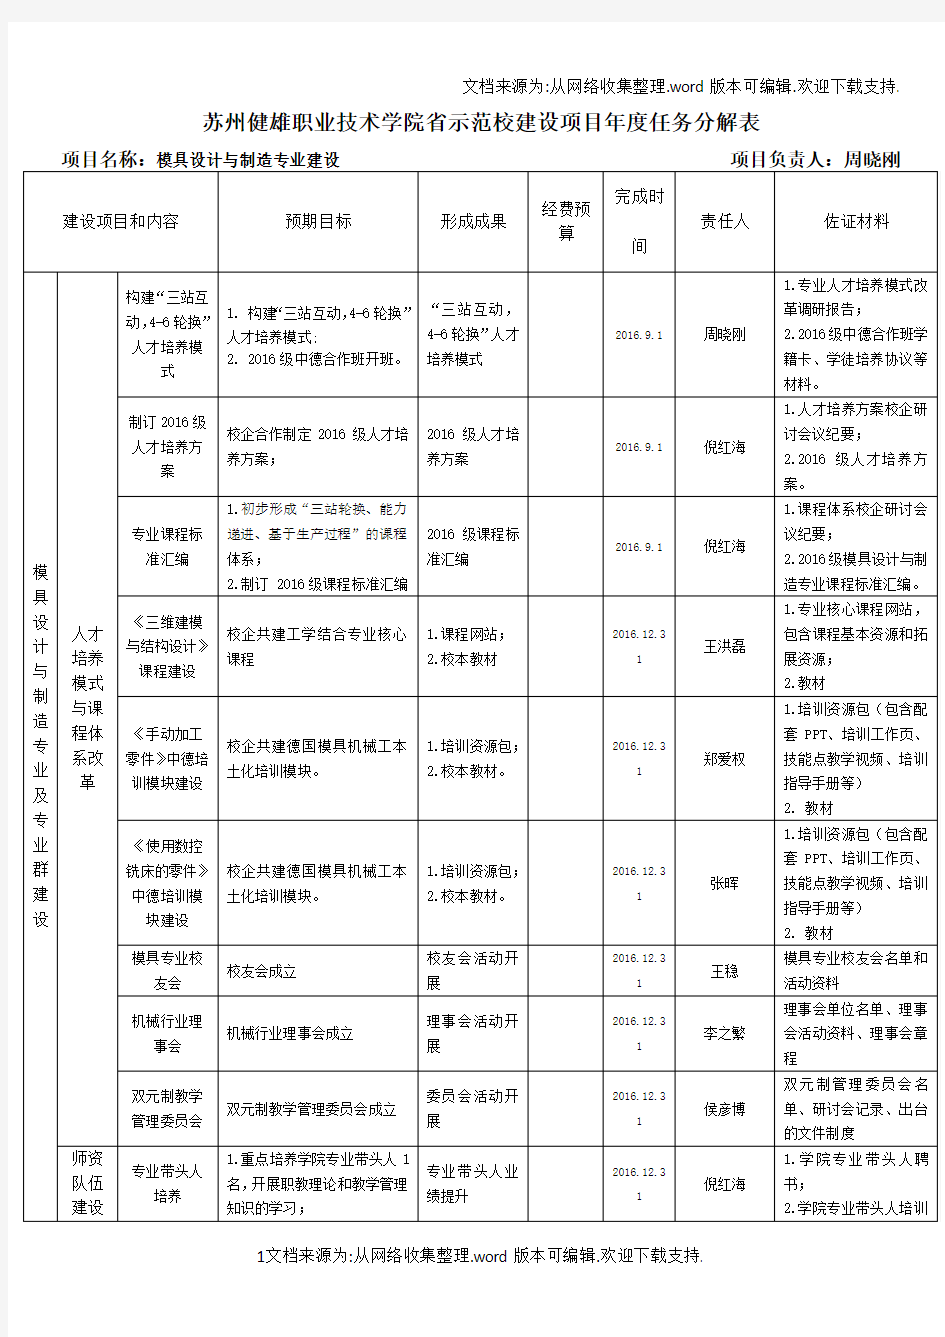 苏州健雄职业技术学院示范校建设项目任务分解表